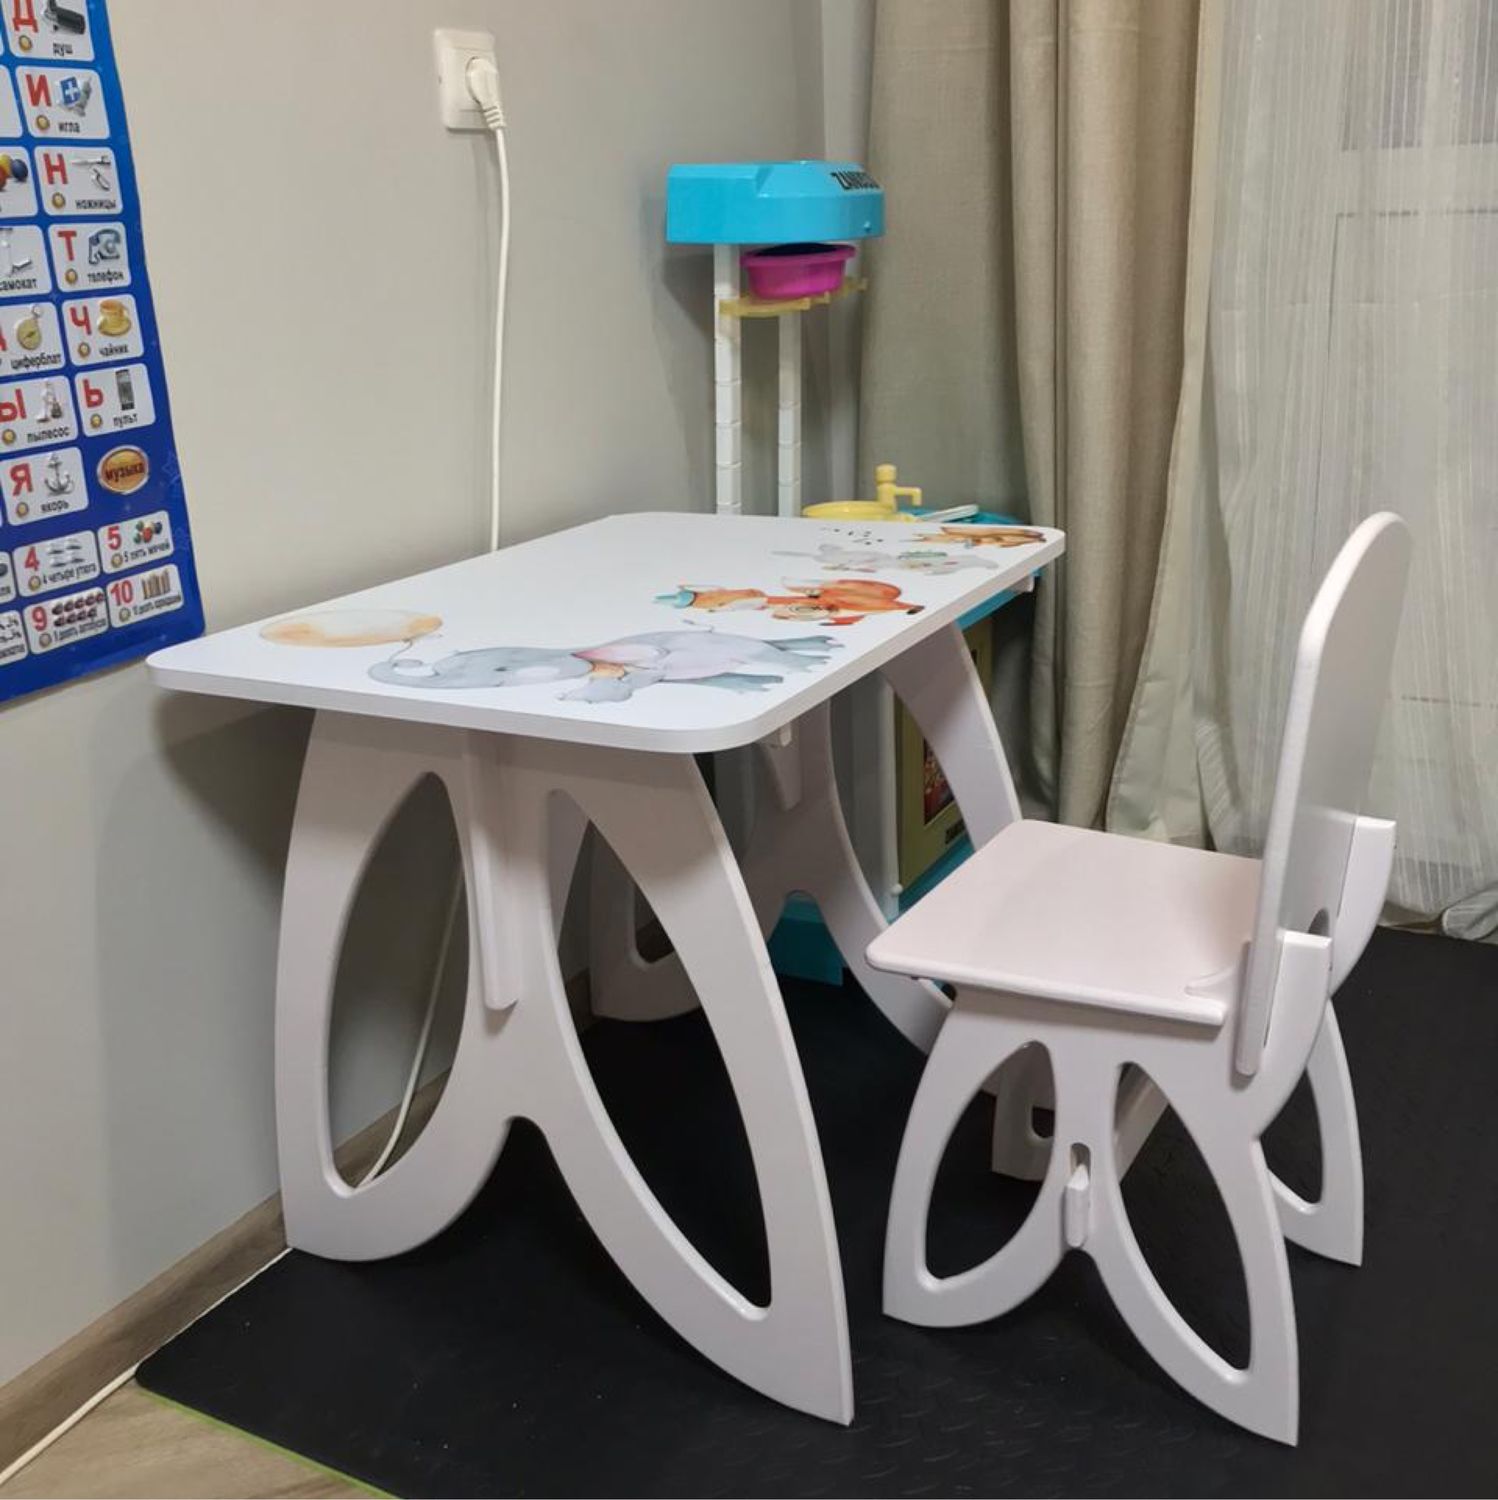 Детский столик и стульчик для ребенка от 5 лет